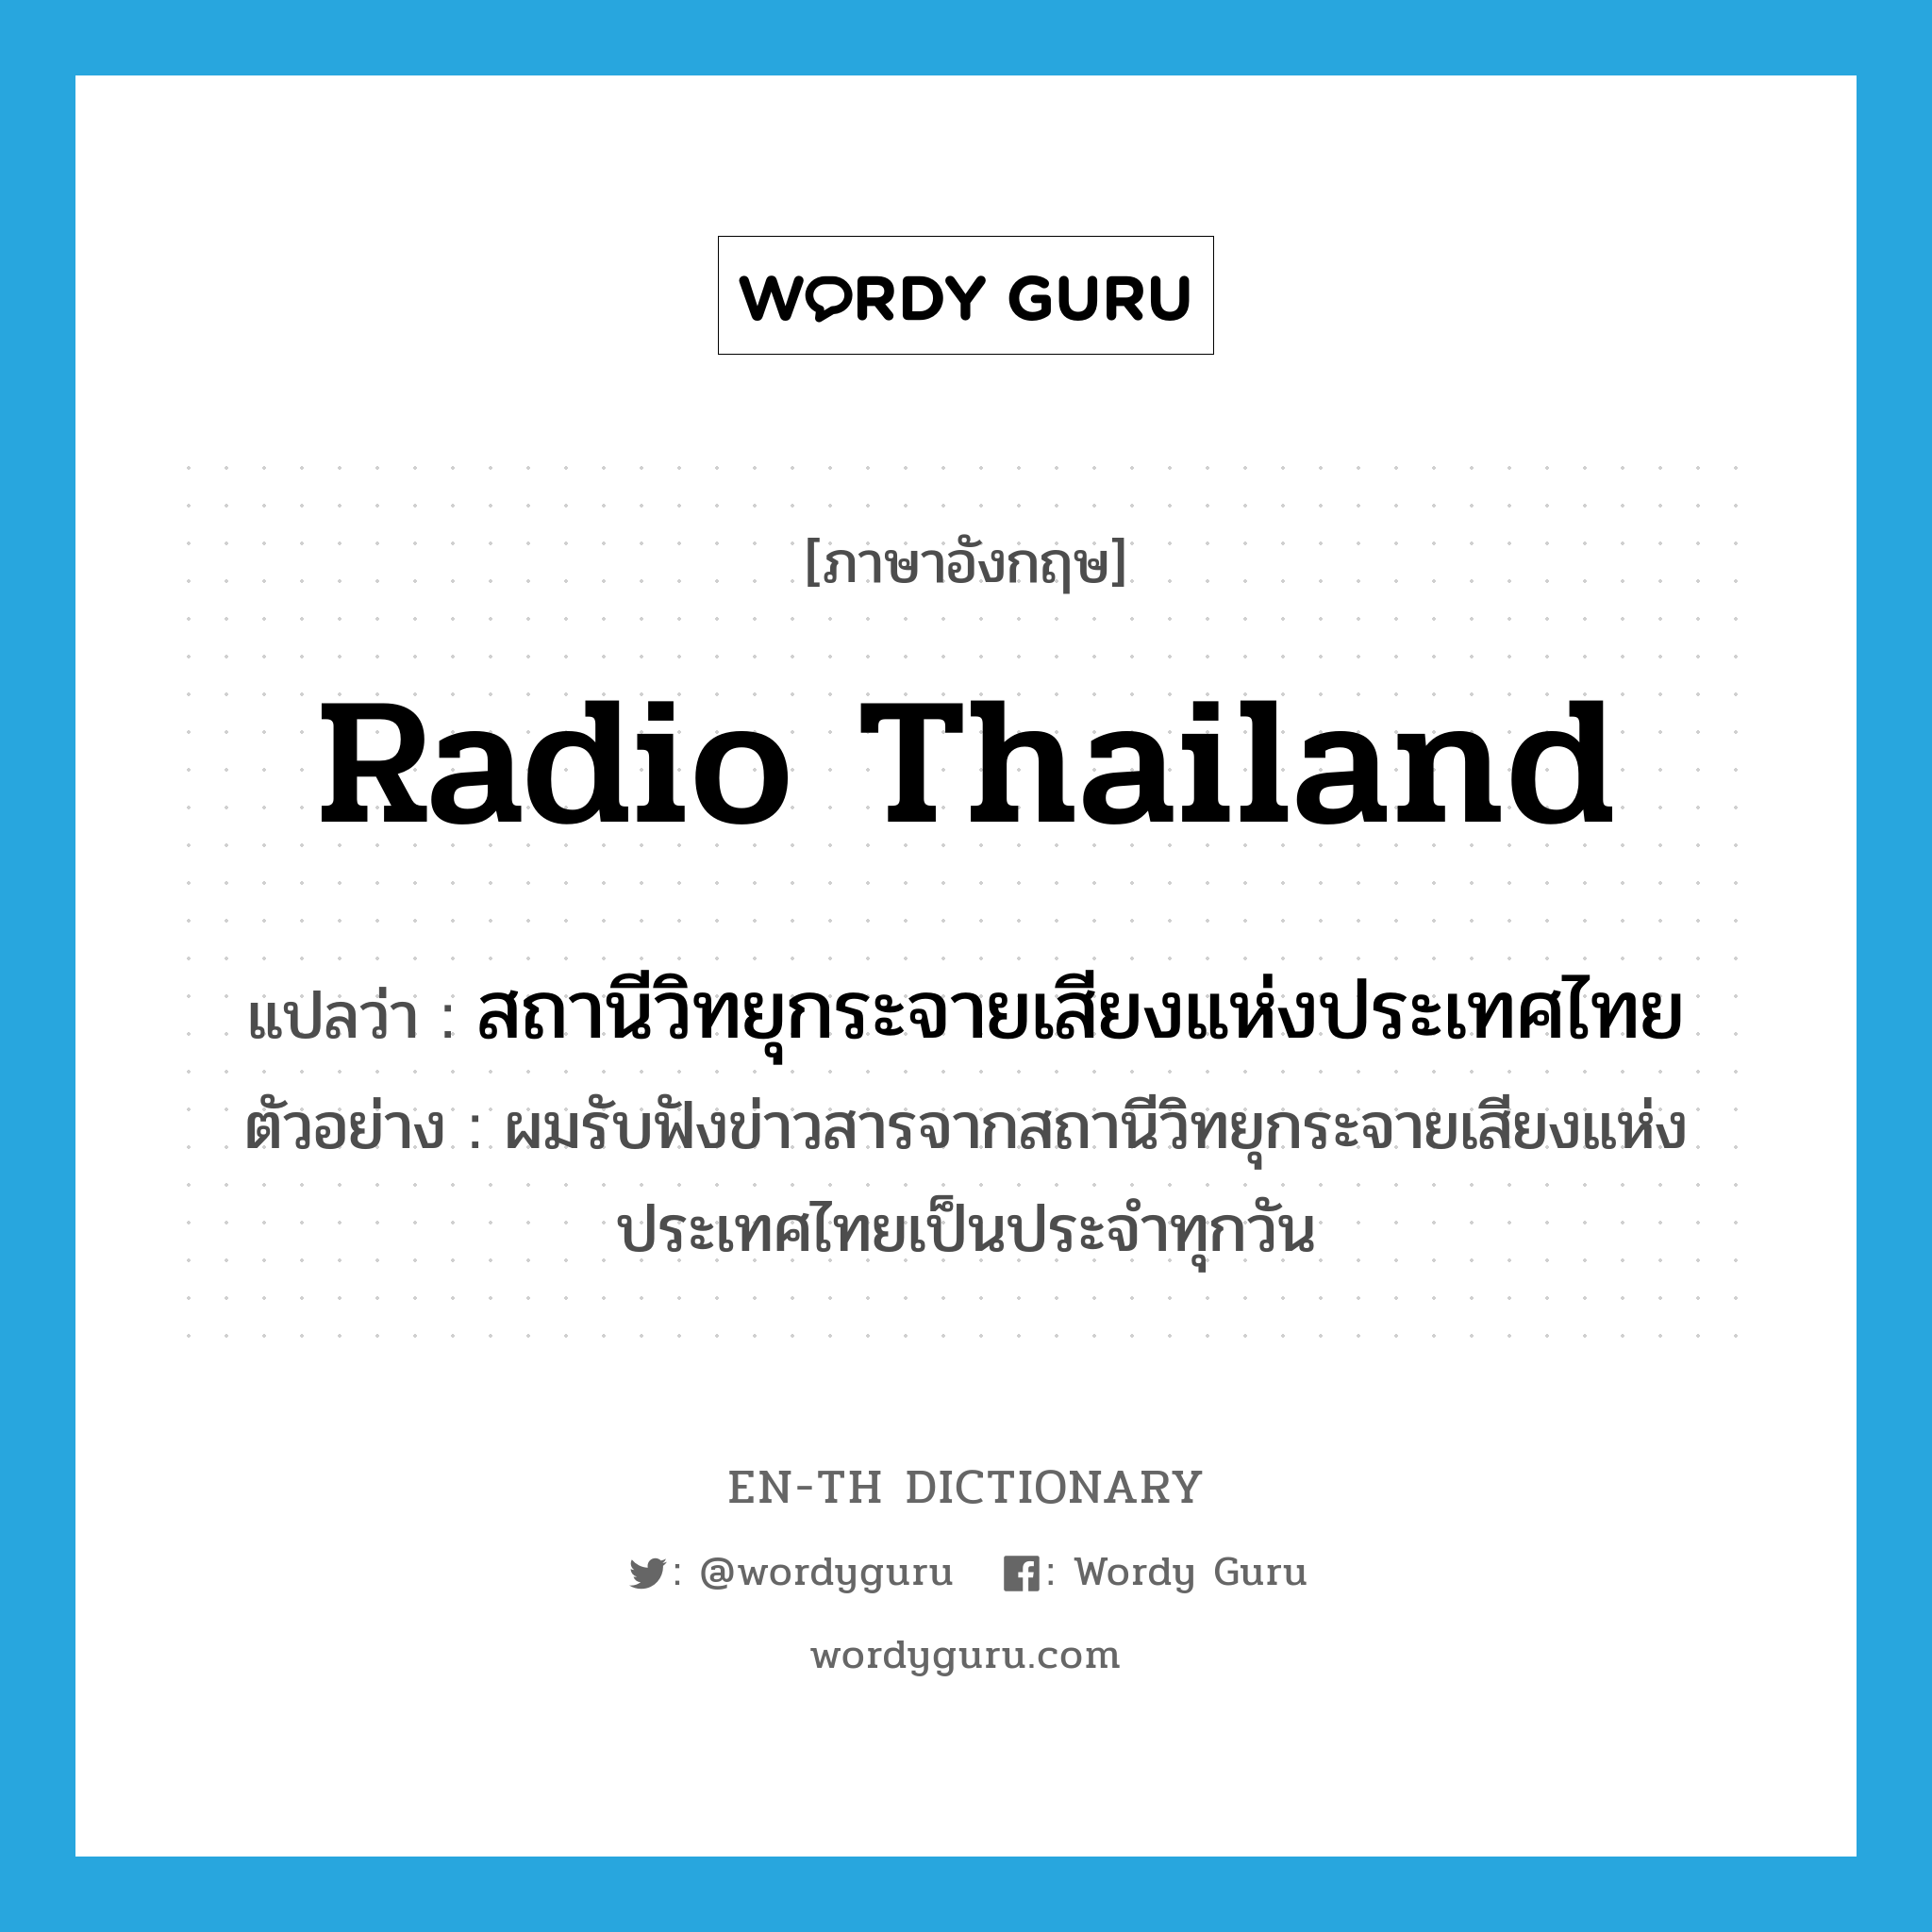 สถานีวิทยุกระจายเสียงแห่งประเทศไทย ภาษาอังกฤษ?, คำศัพท์ภาษาอังกฤษ สถานีวิทยุกระจายเสียงแห่งประเทศไทย แปลว่า Radio Thailand ประเภท N ตัวอย่าง ผมรับฟังข่าวสารจากสถานีวิทยุกระจายเสียงแห่งประเทศไทยเป็นประจำทุกวัน หมวด N